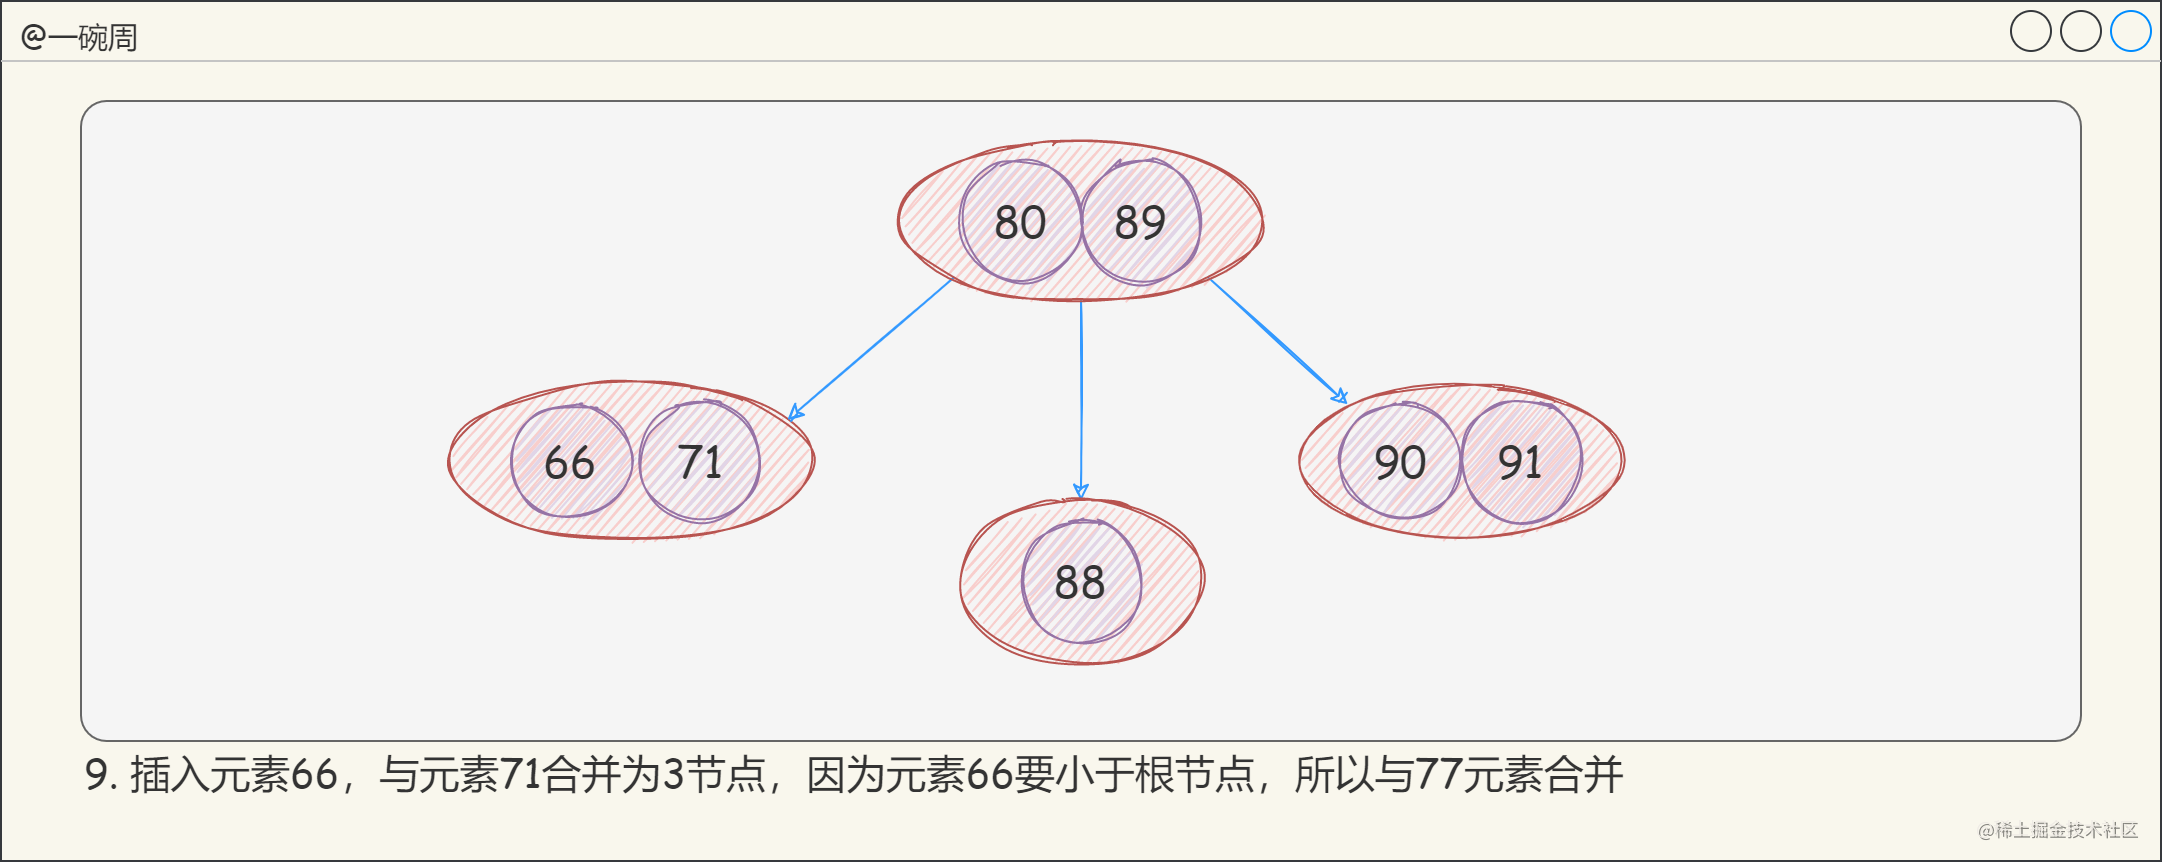 13_2-3-4树的构建过程5_Yan-YjIe2t.png